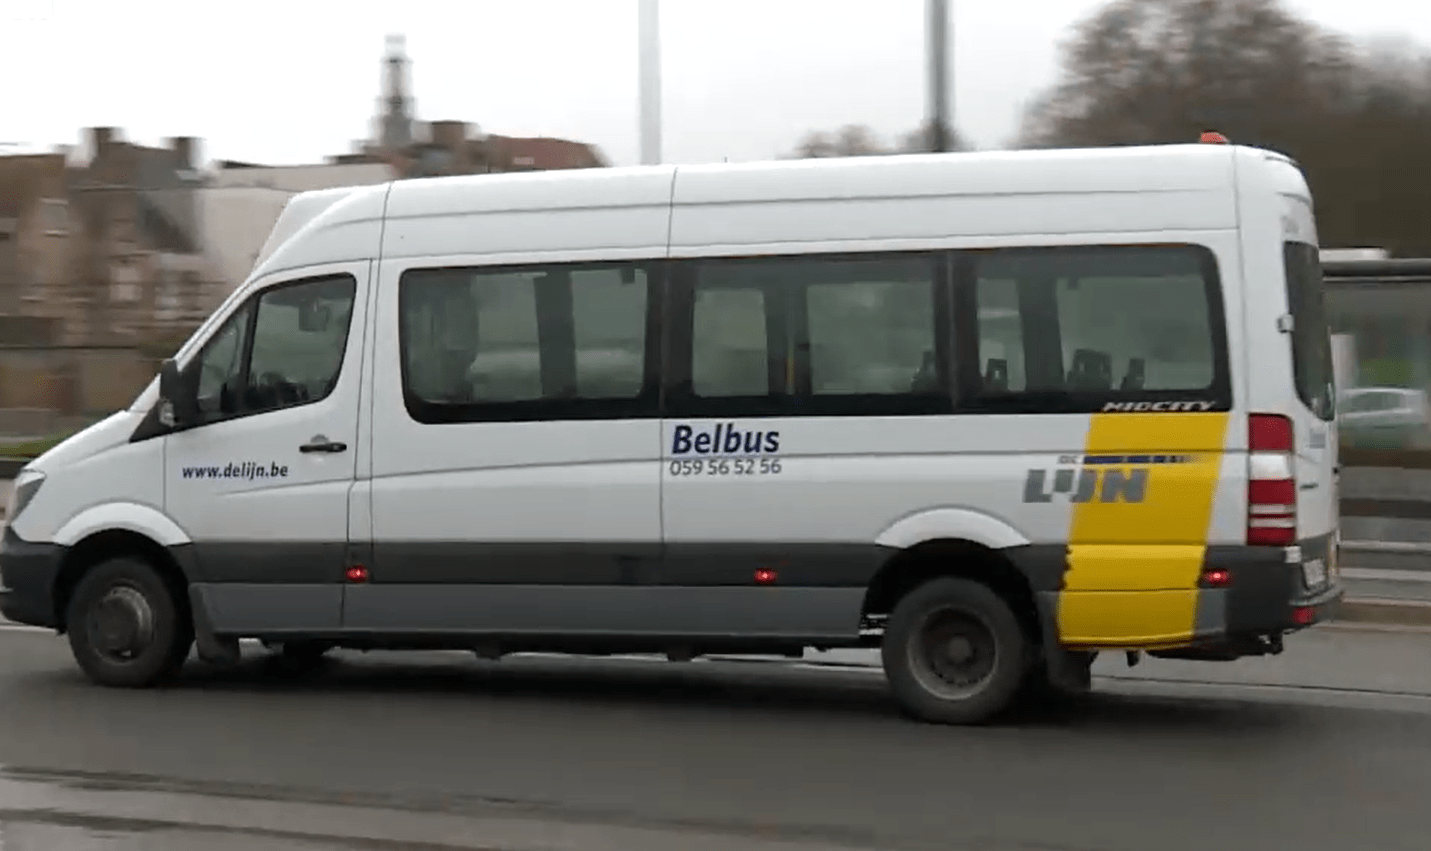 Taxis ersetzen zunehmend Westhoek-Anrufbusse